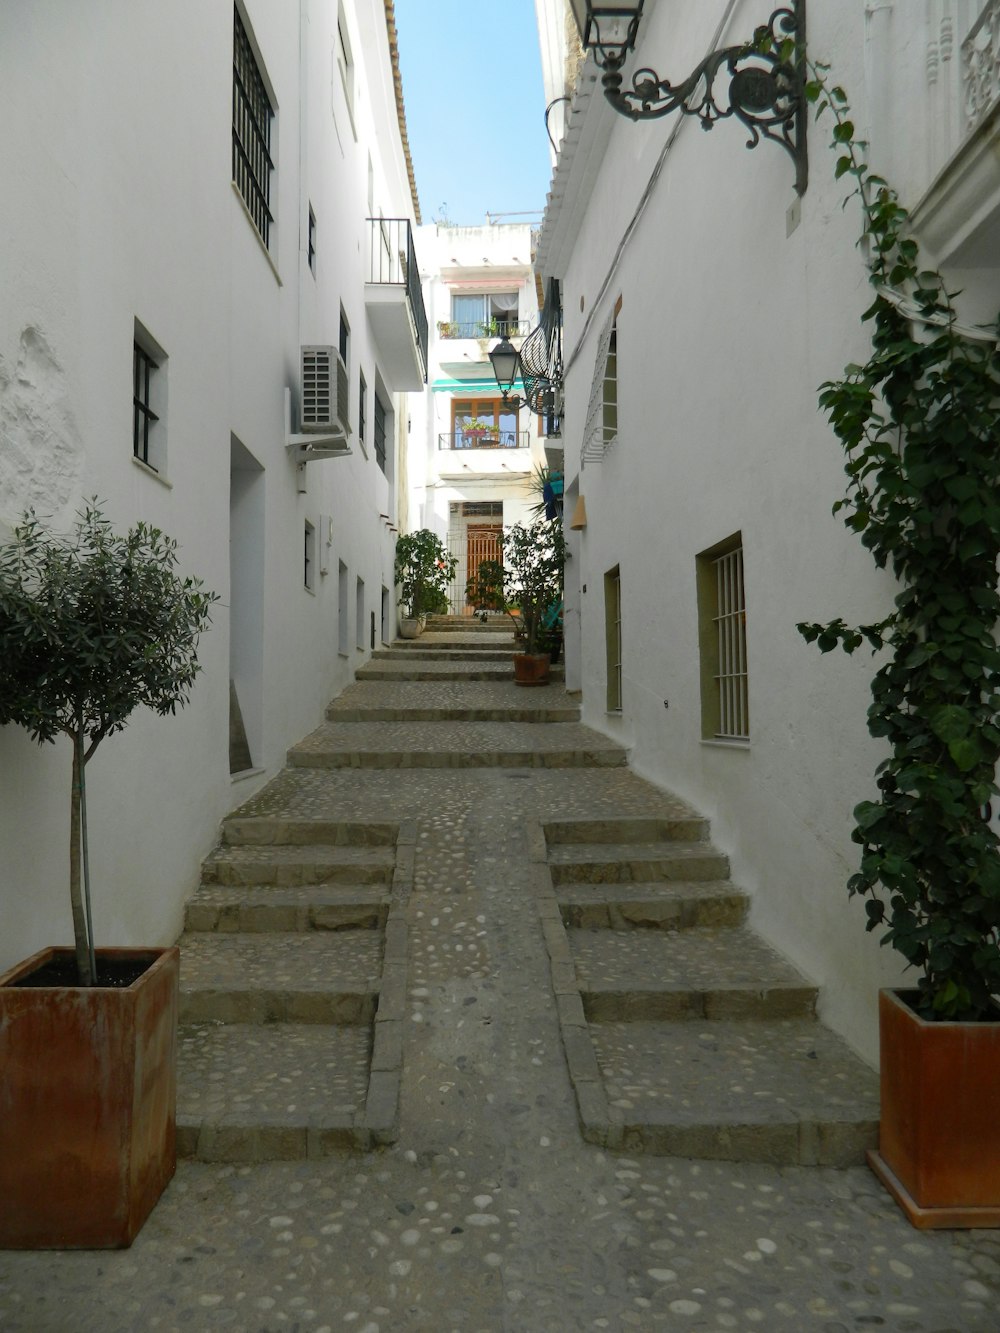 a stone walkway between white buildings